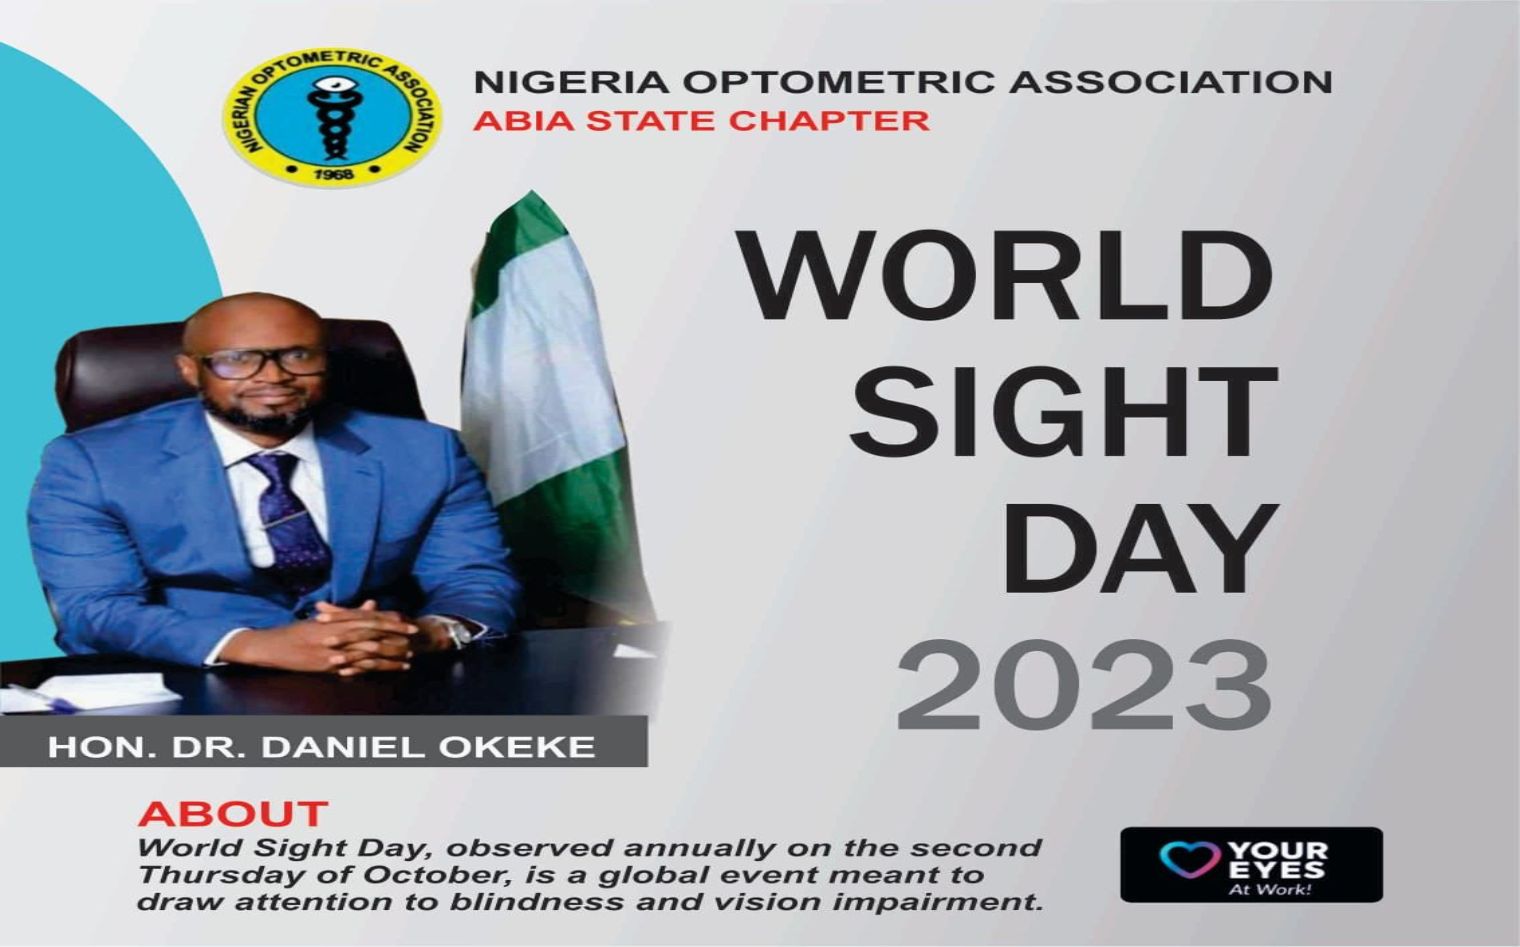 Nigeria Optometric Association Honours Dan Okeke On Efforts To Prevent Avoidable Blindness